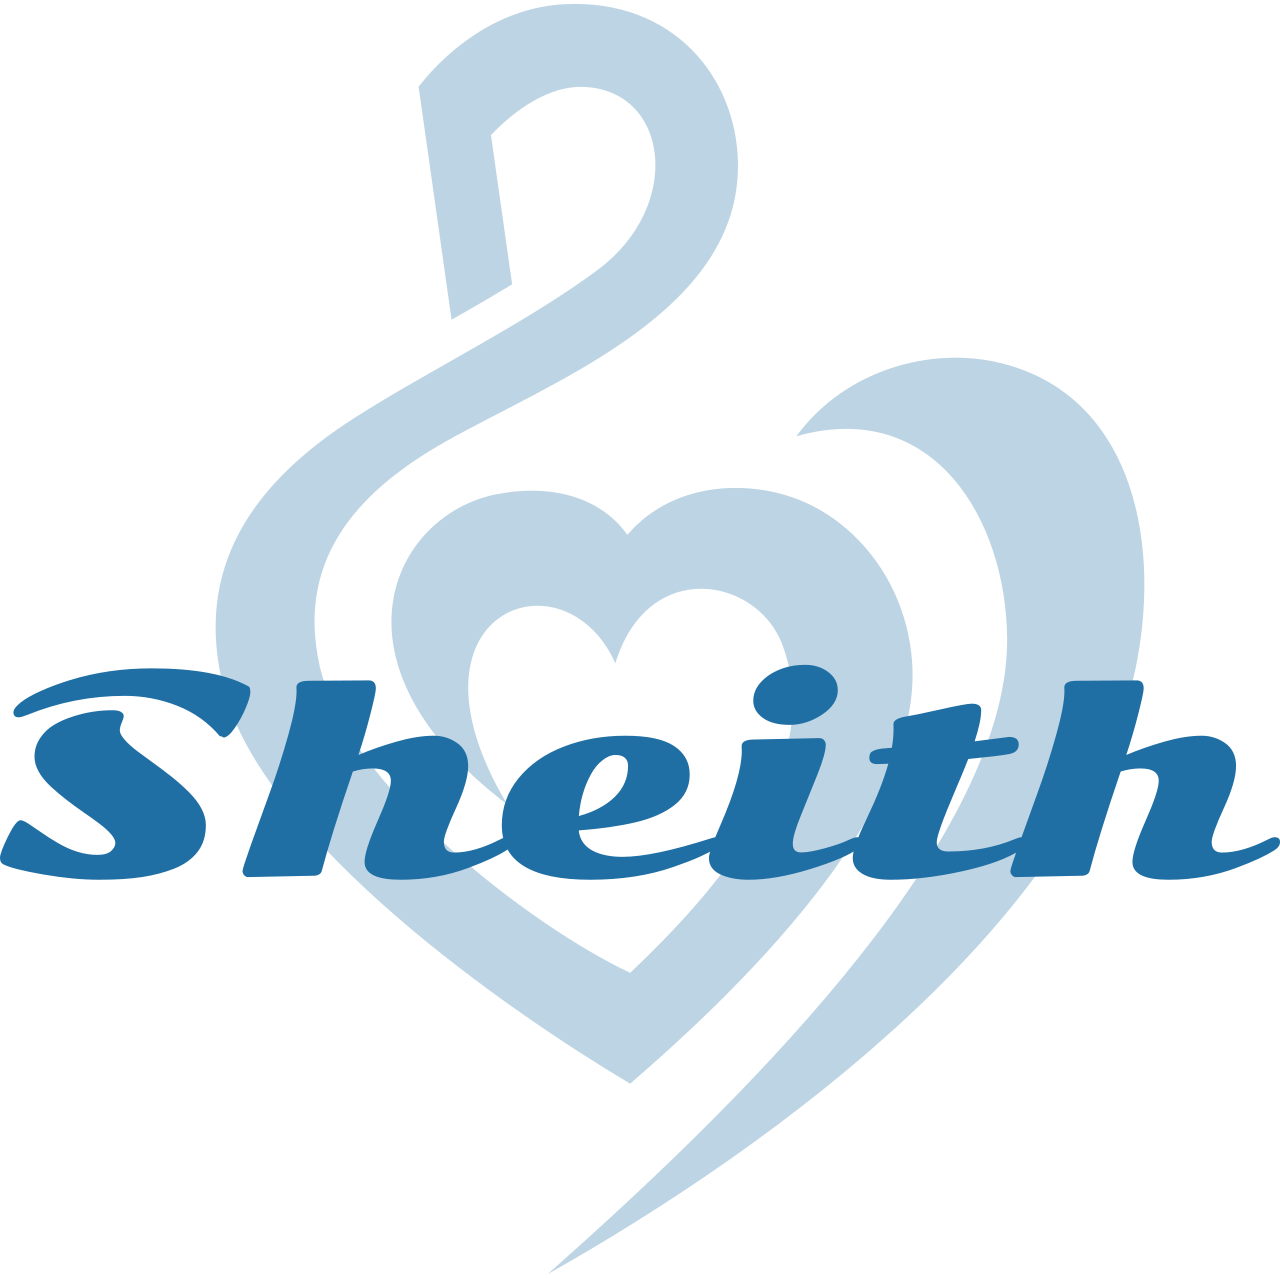 Sheith's logo